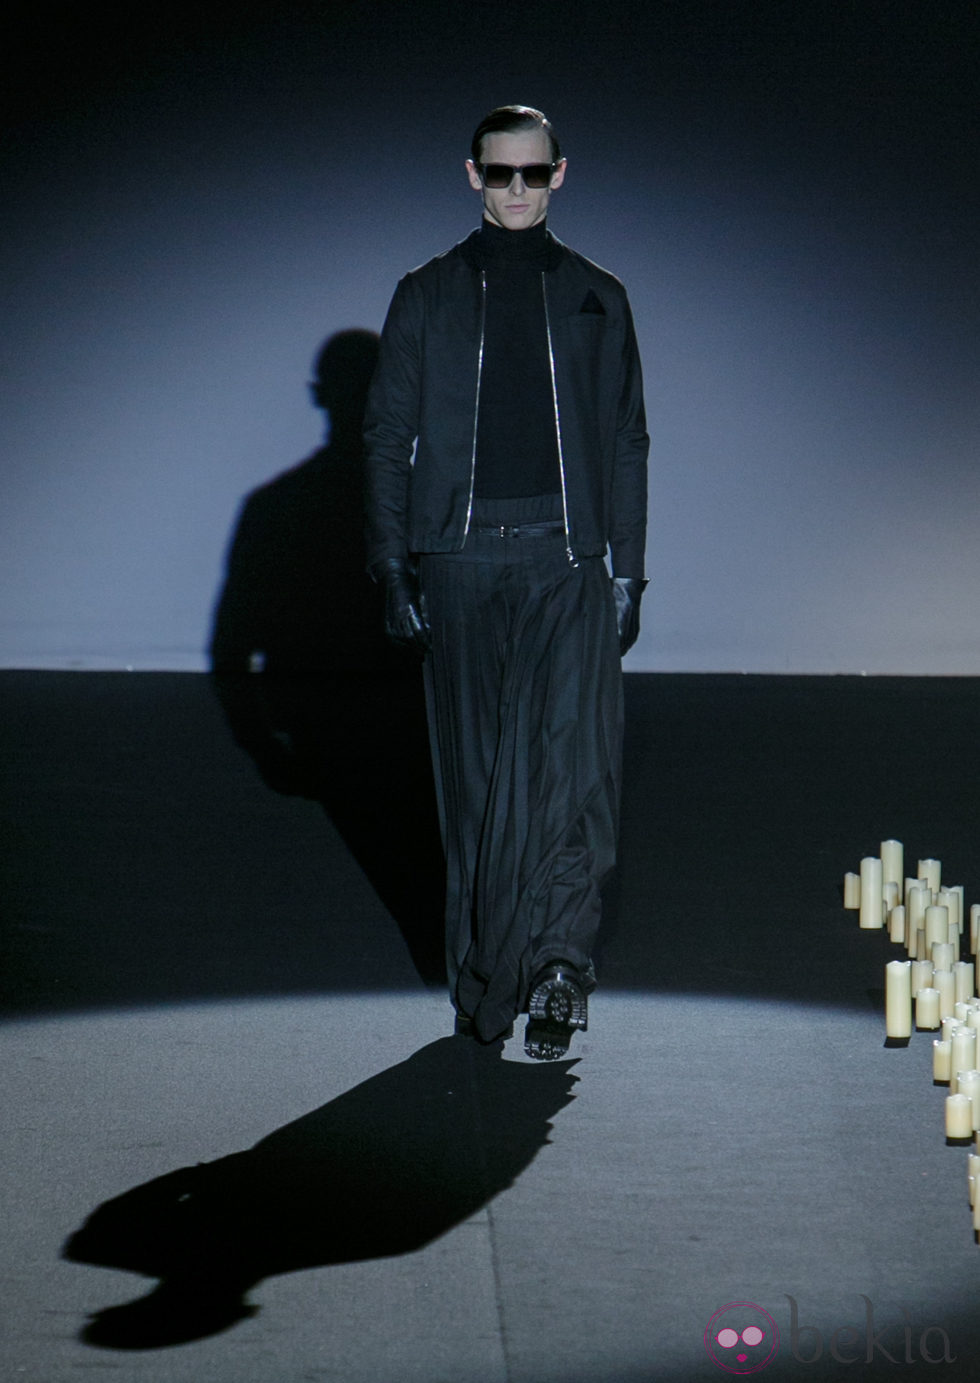 Chaqueta y falda negras de Davidelfin en Madrid Fashion Week para otoño/invierno 2015/2016